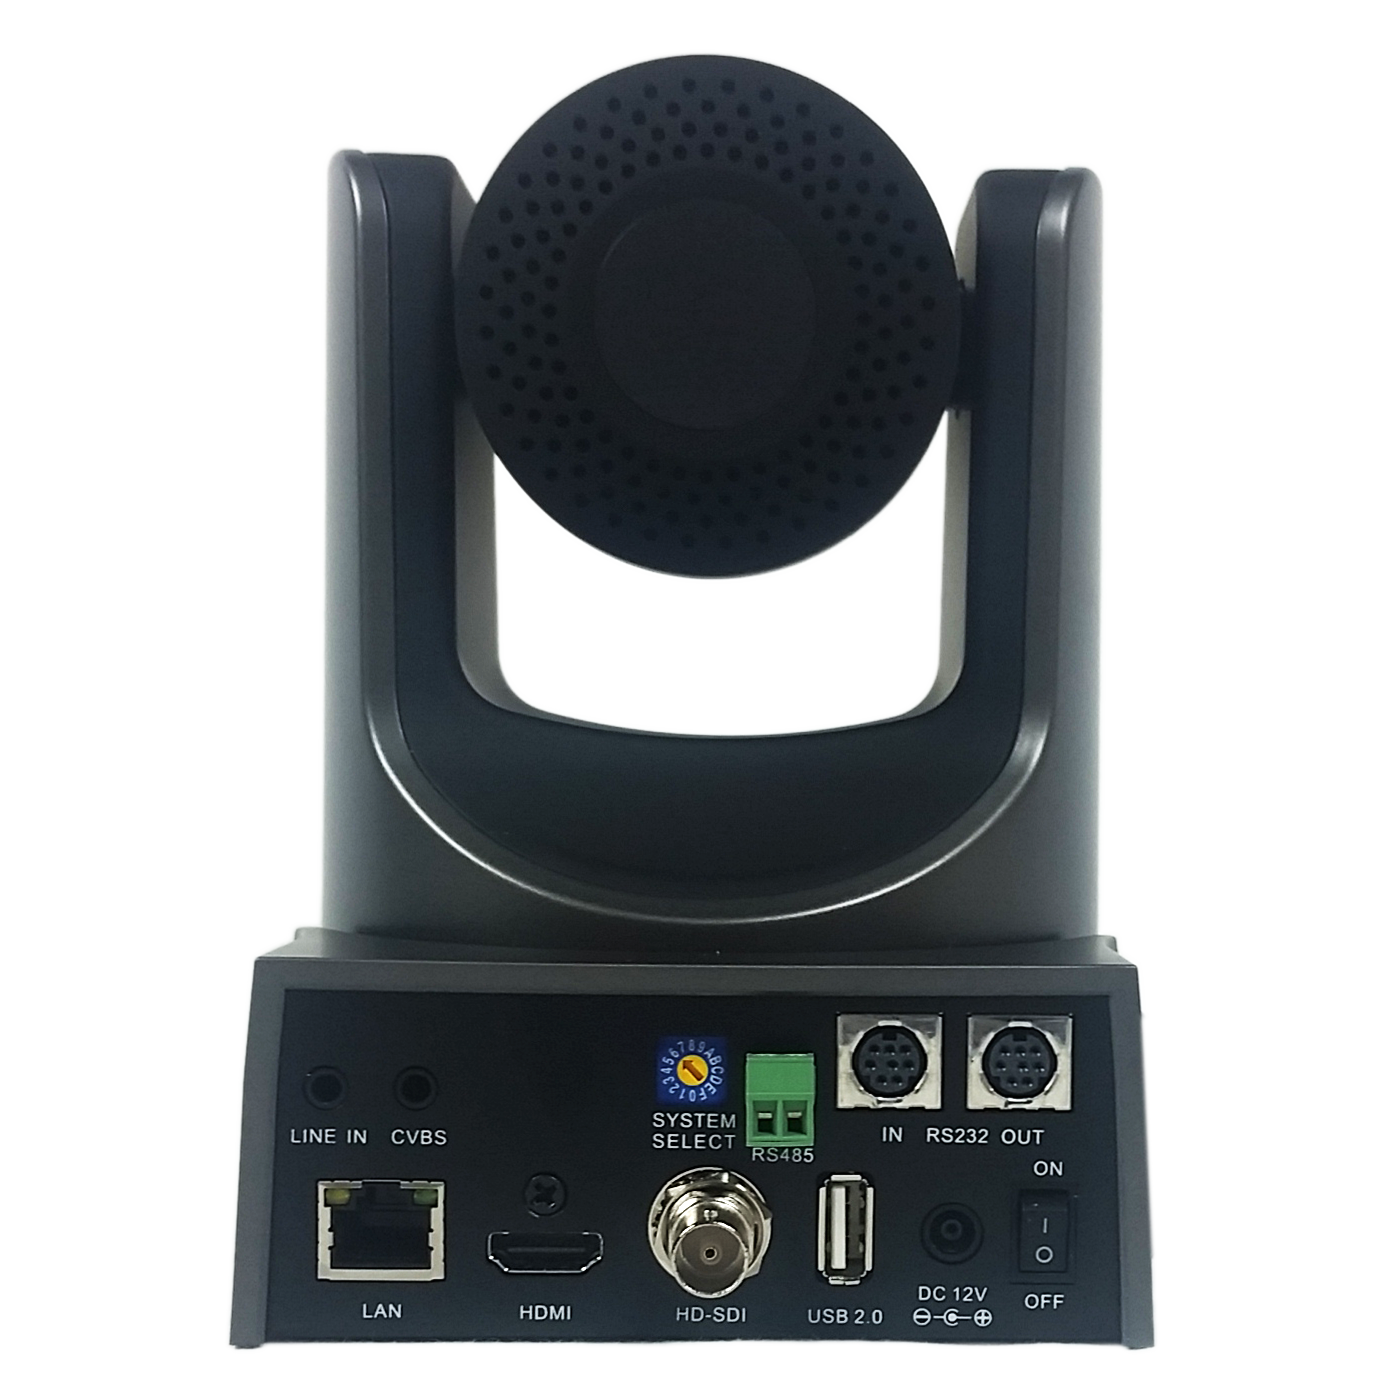 PTZOptics 12X-SDI Video Conferencing Camera (White) with NDI Firmware Update